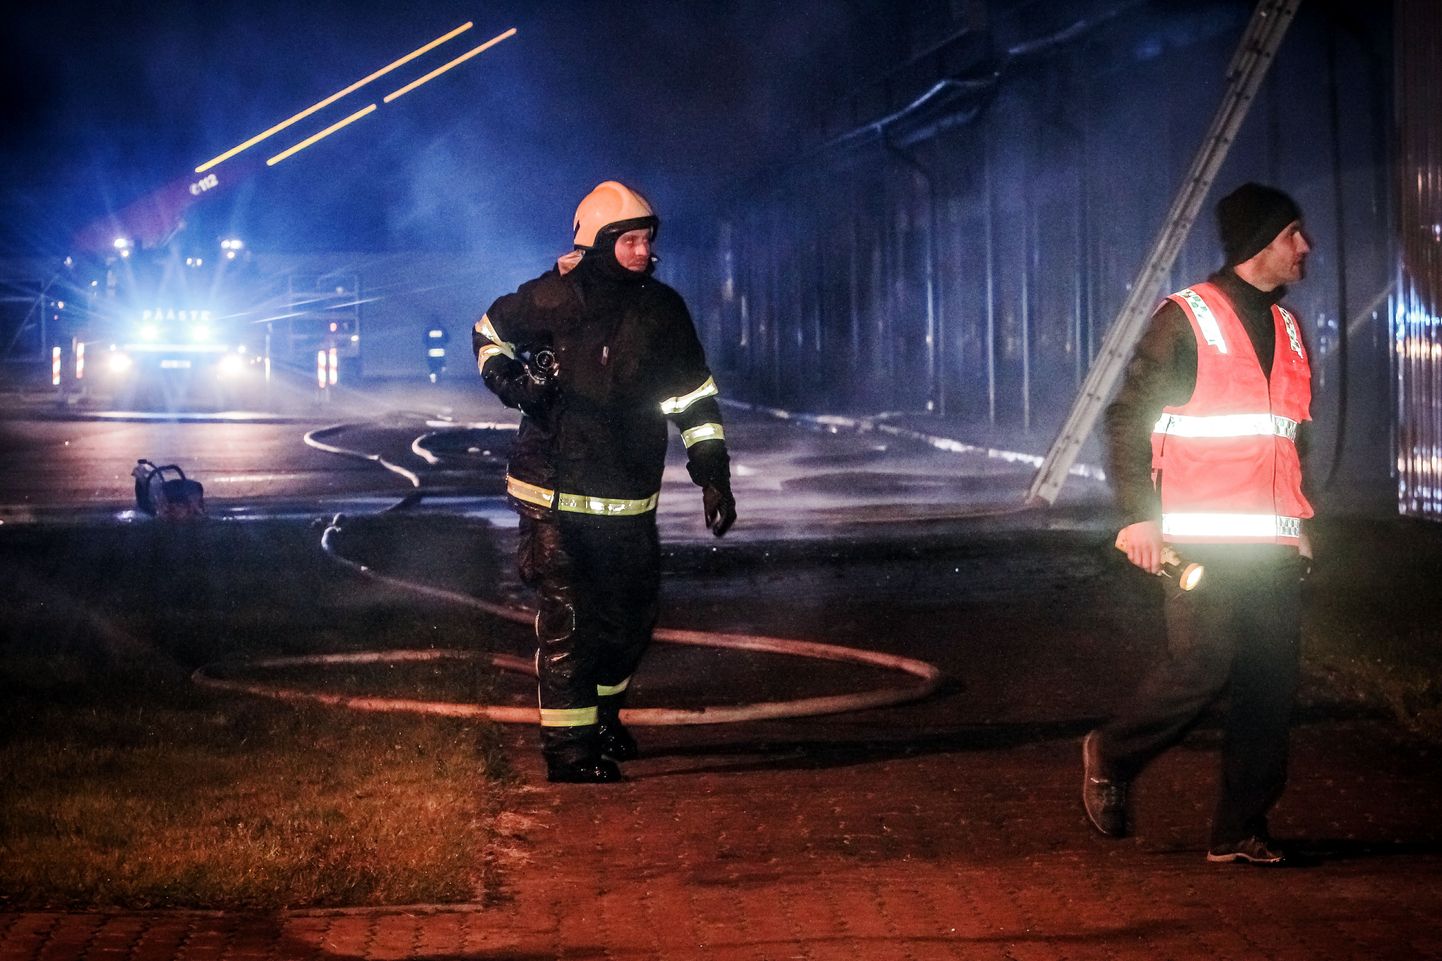 Laupäeva õhtul puhkes tulekahju Pärnus Tallinna maanteel asuvas Härma kaubahoovis, kus põles ligi 2000 ruutmeetril hoone Tallinna-poolse tiiva katus.